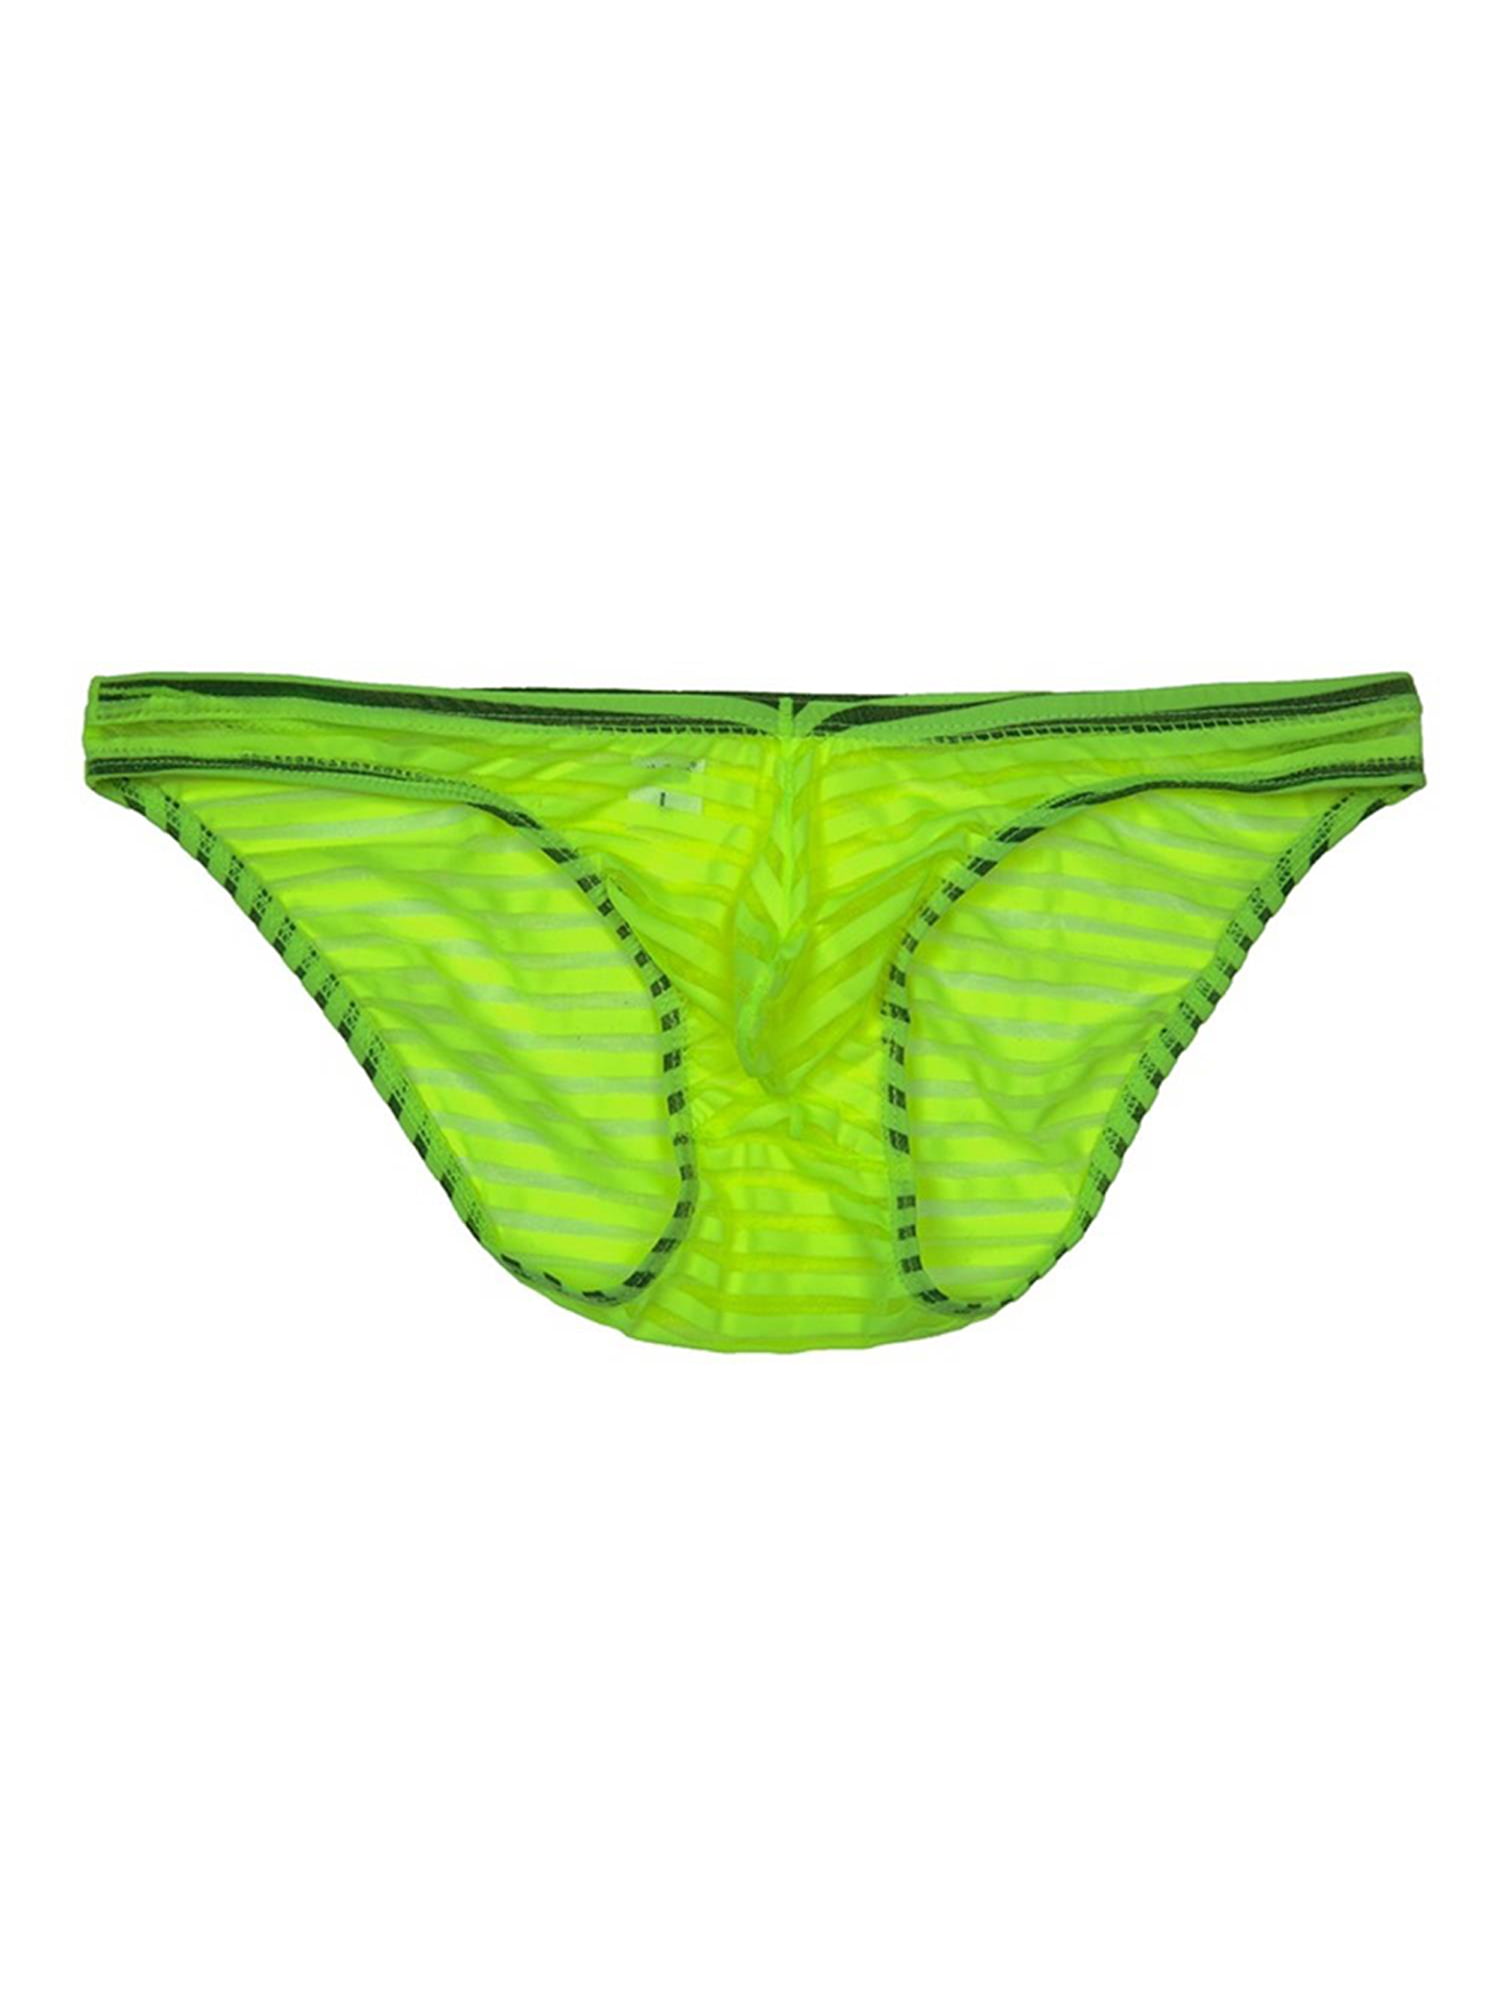 KAMAMEN Men's Sexy Briefs Underwear Mesh Low Waist Breathable Breton ...